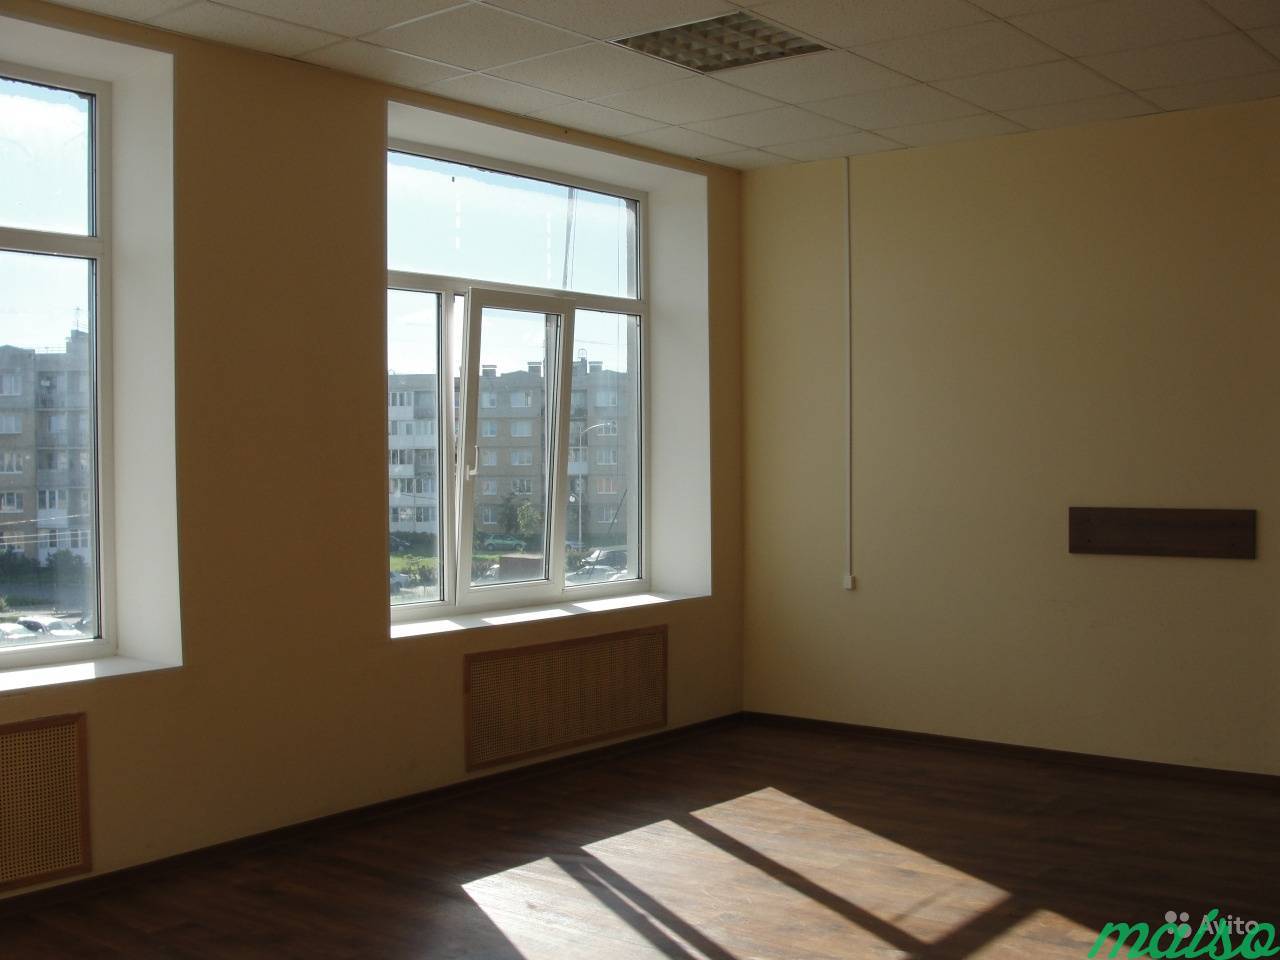 Офисное помещение в Славянке, от 12 м² до 500 м² в Санкт-Петербурге. Фото 1